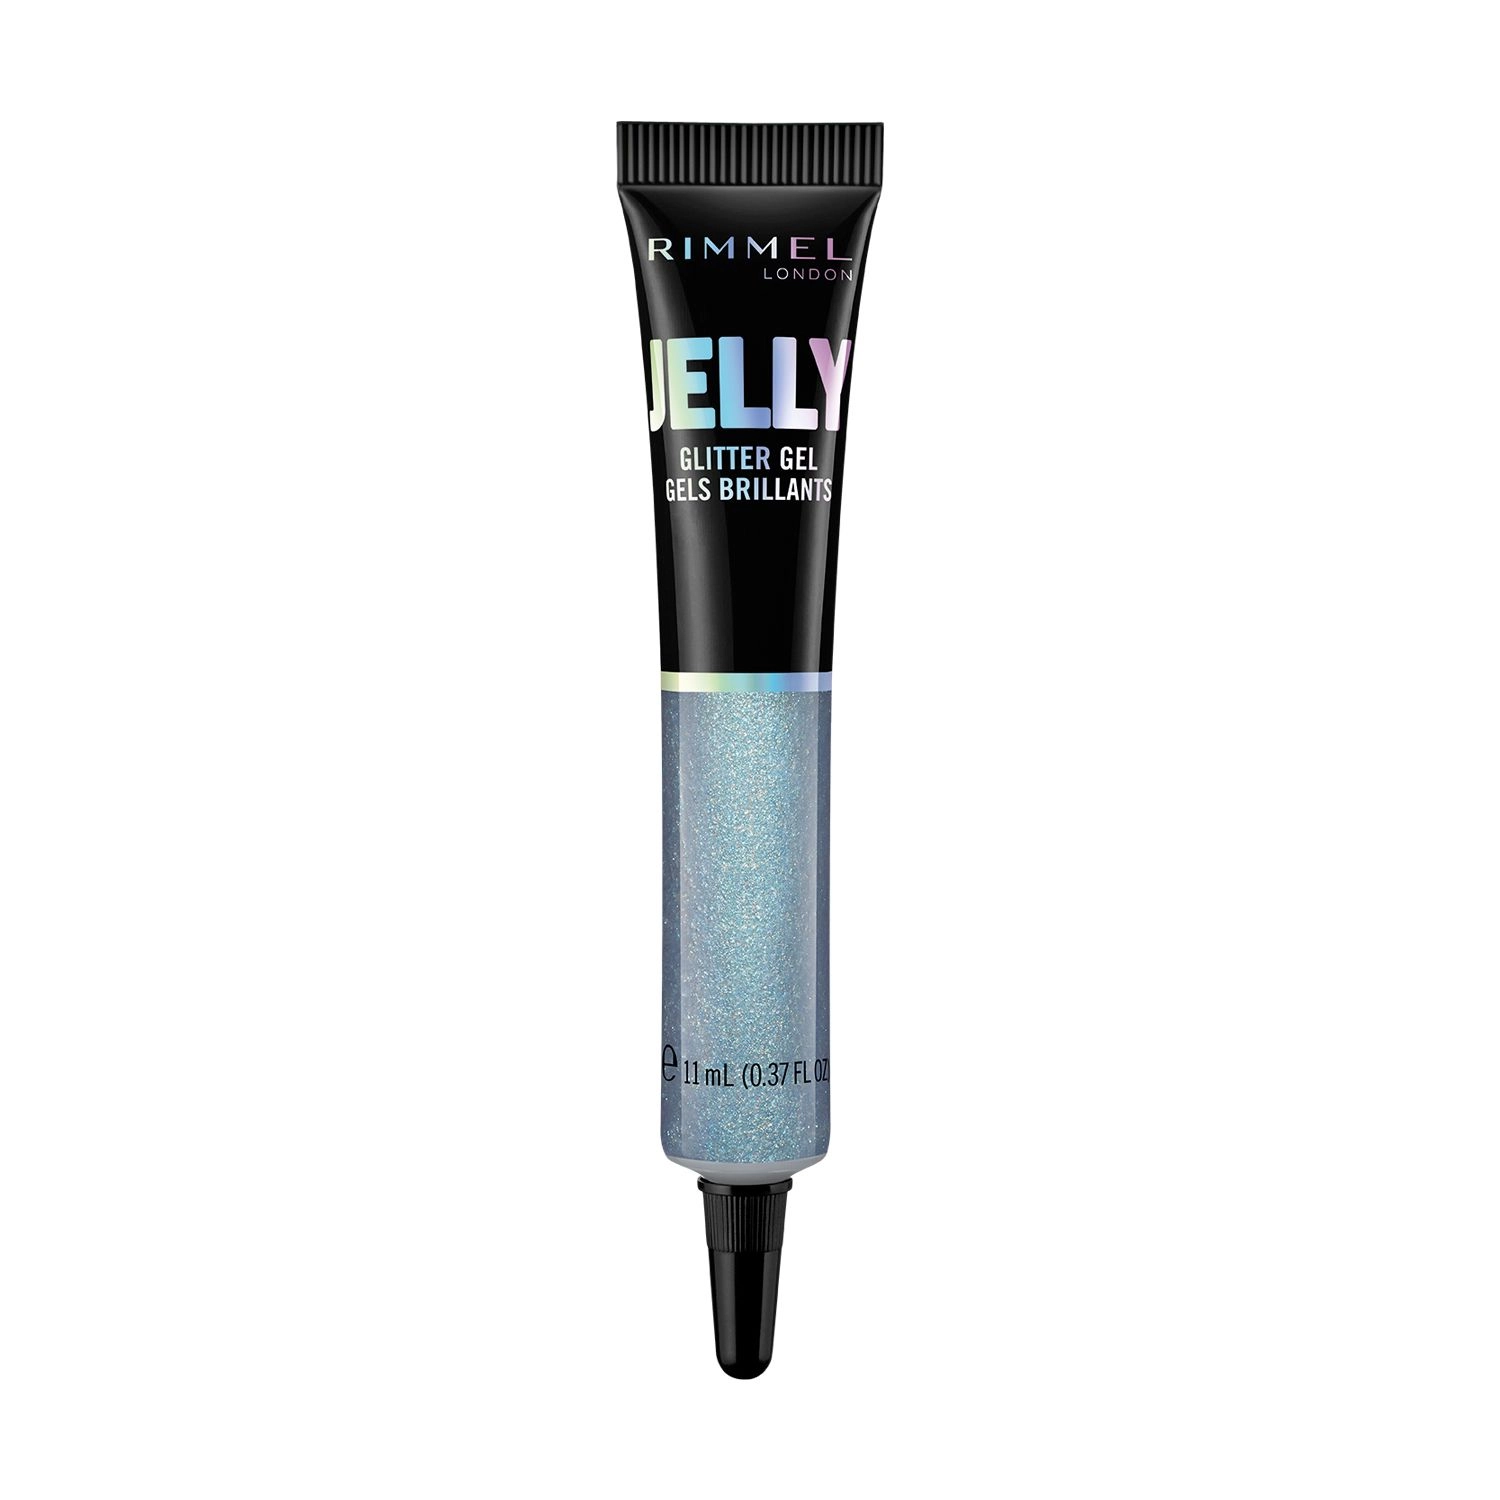 Rimmel Жидкий глиттер для макияжа Jelly Glitter Gel Gels Brillants 200 Blue Lagoon, 11 мл - фото N1